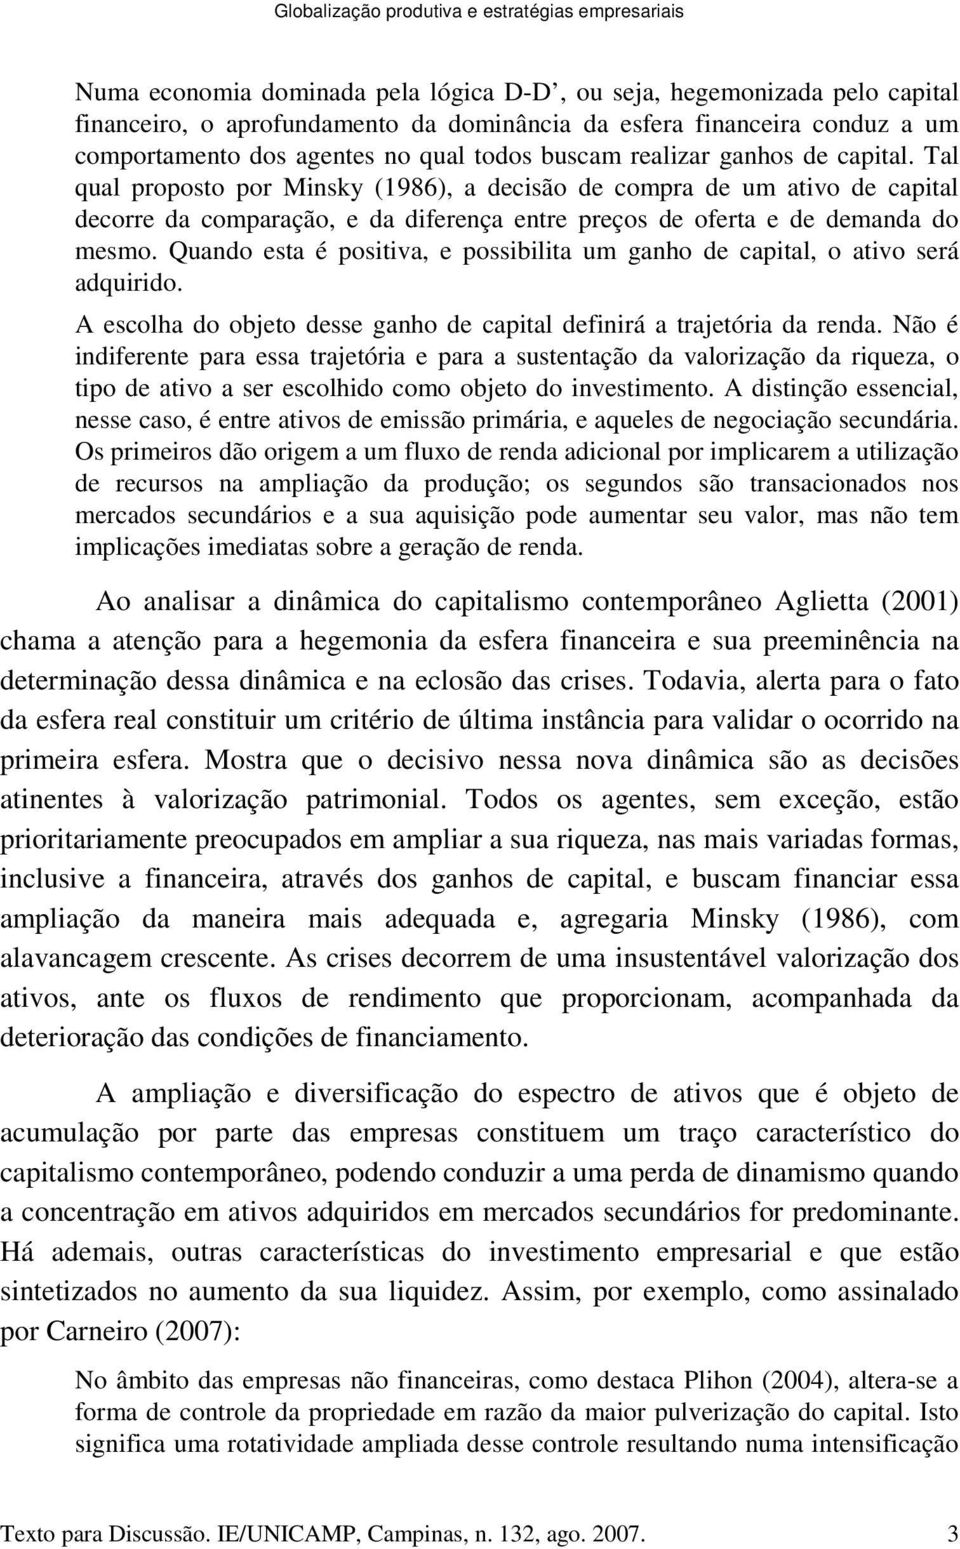 Tal qual proposto por Minsky (1986), a decisão de compra de um ativo de capital decorre da comparação, e da diferença entre preços de oferta e de demanda do mesmo.